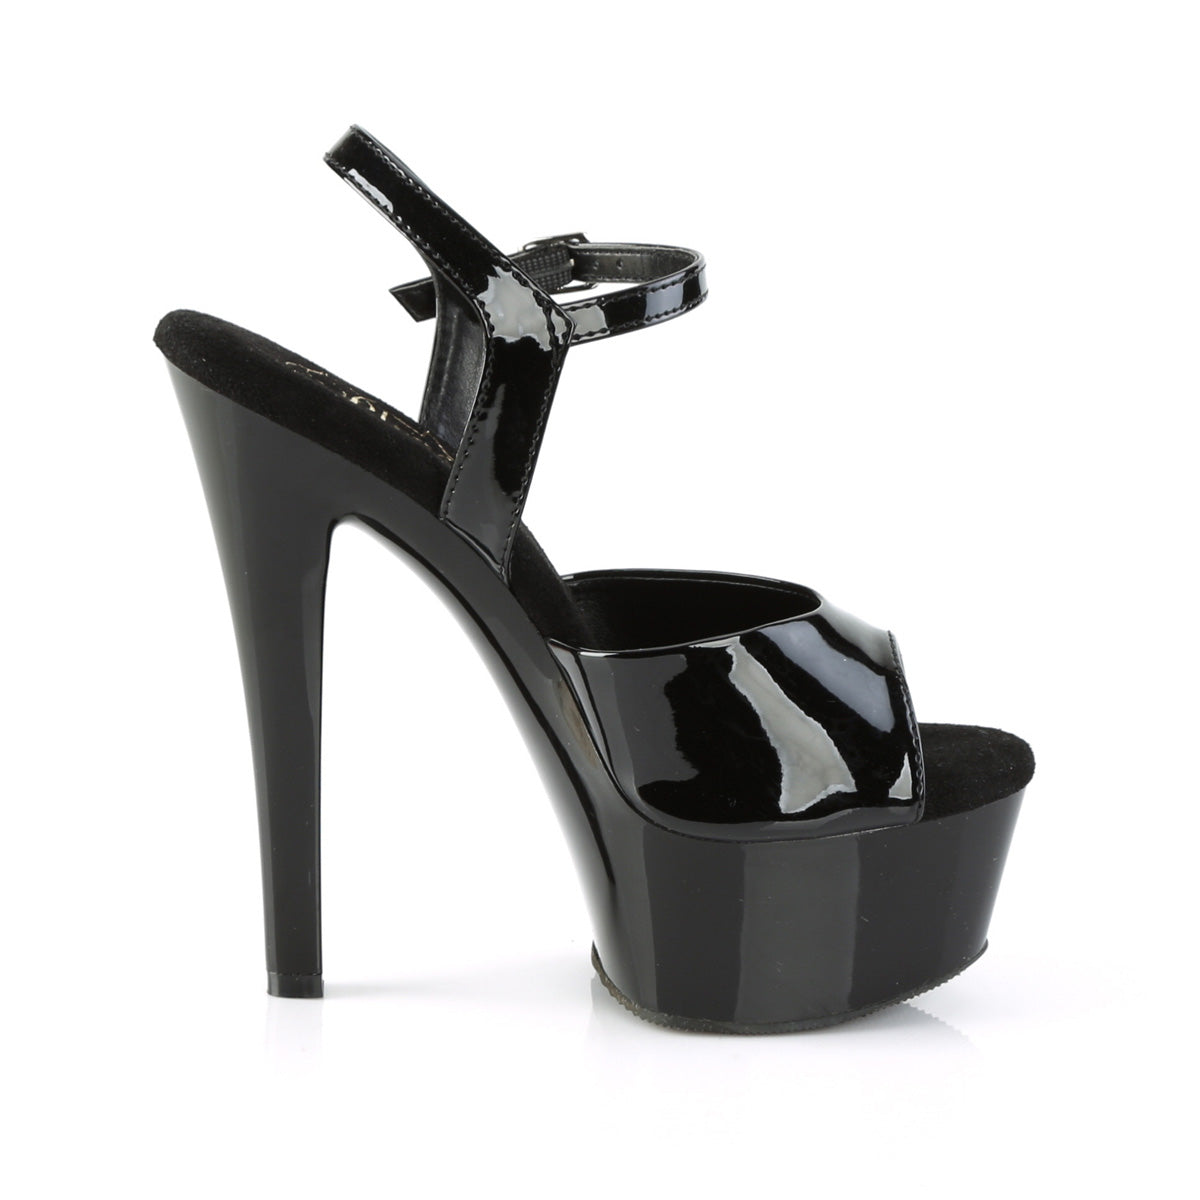 GLEAM-609 Pleaser 6 Inch Black Patent Ankle Strap Stripper Heels